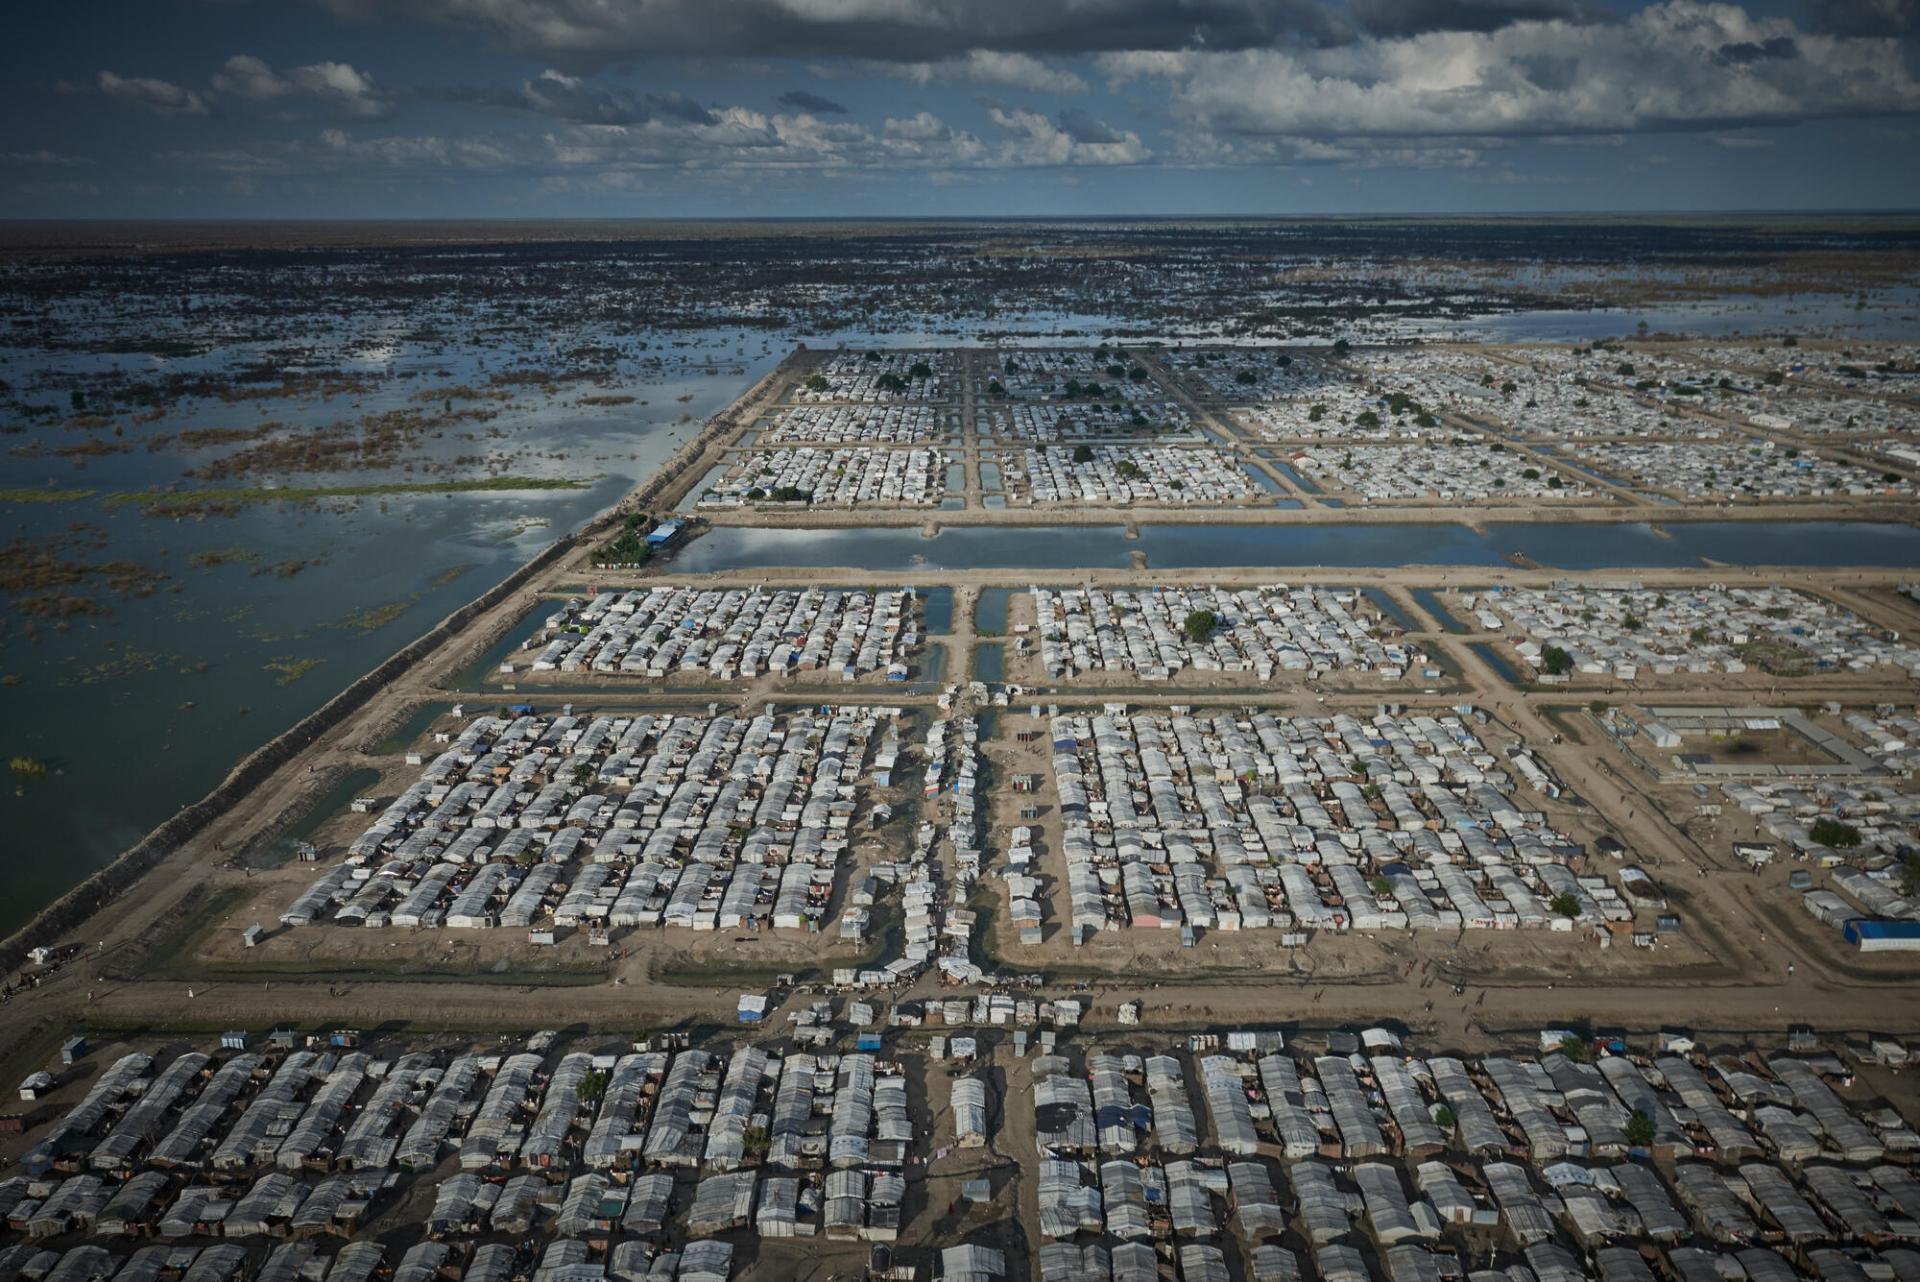 Vue aérienne du camp de personnes déplacées de Bentiu, au Soudan du Sud. Le camp, où vivent environ 120 000 personnes, est entouré de digues pour éviter qu’il ne soit inondé. Soudan du Sud, août 2022